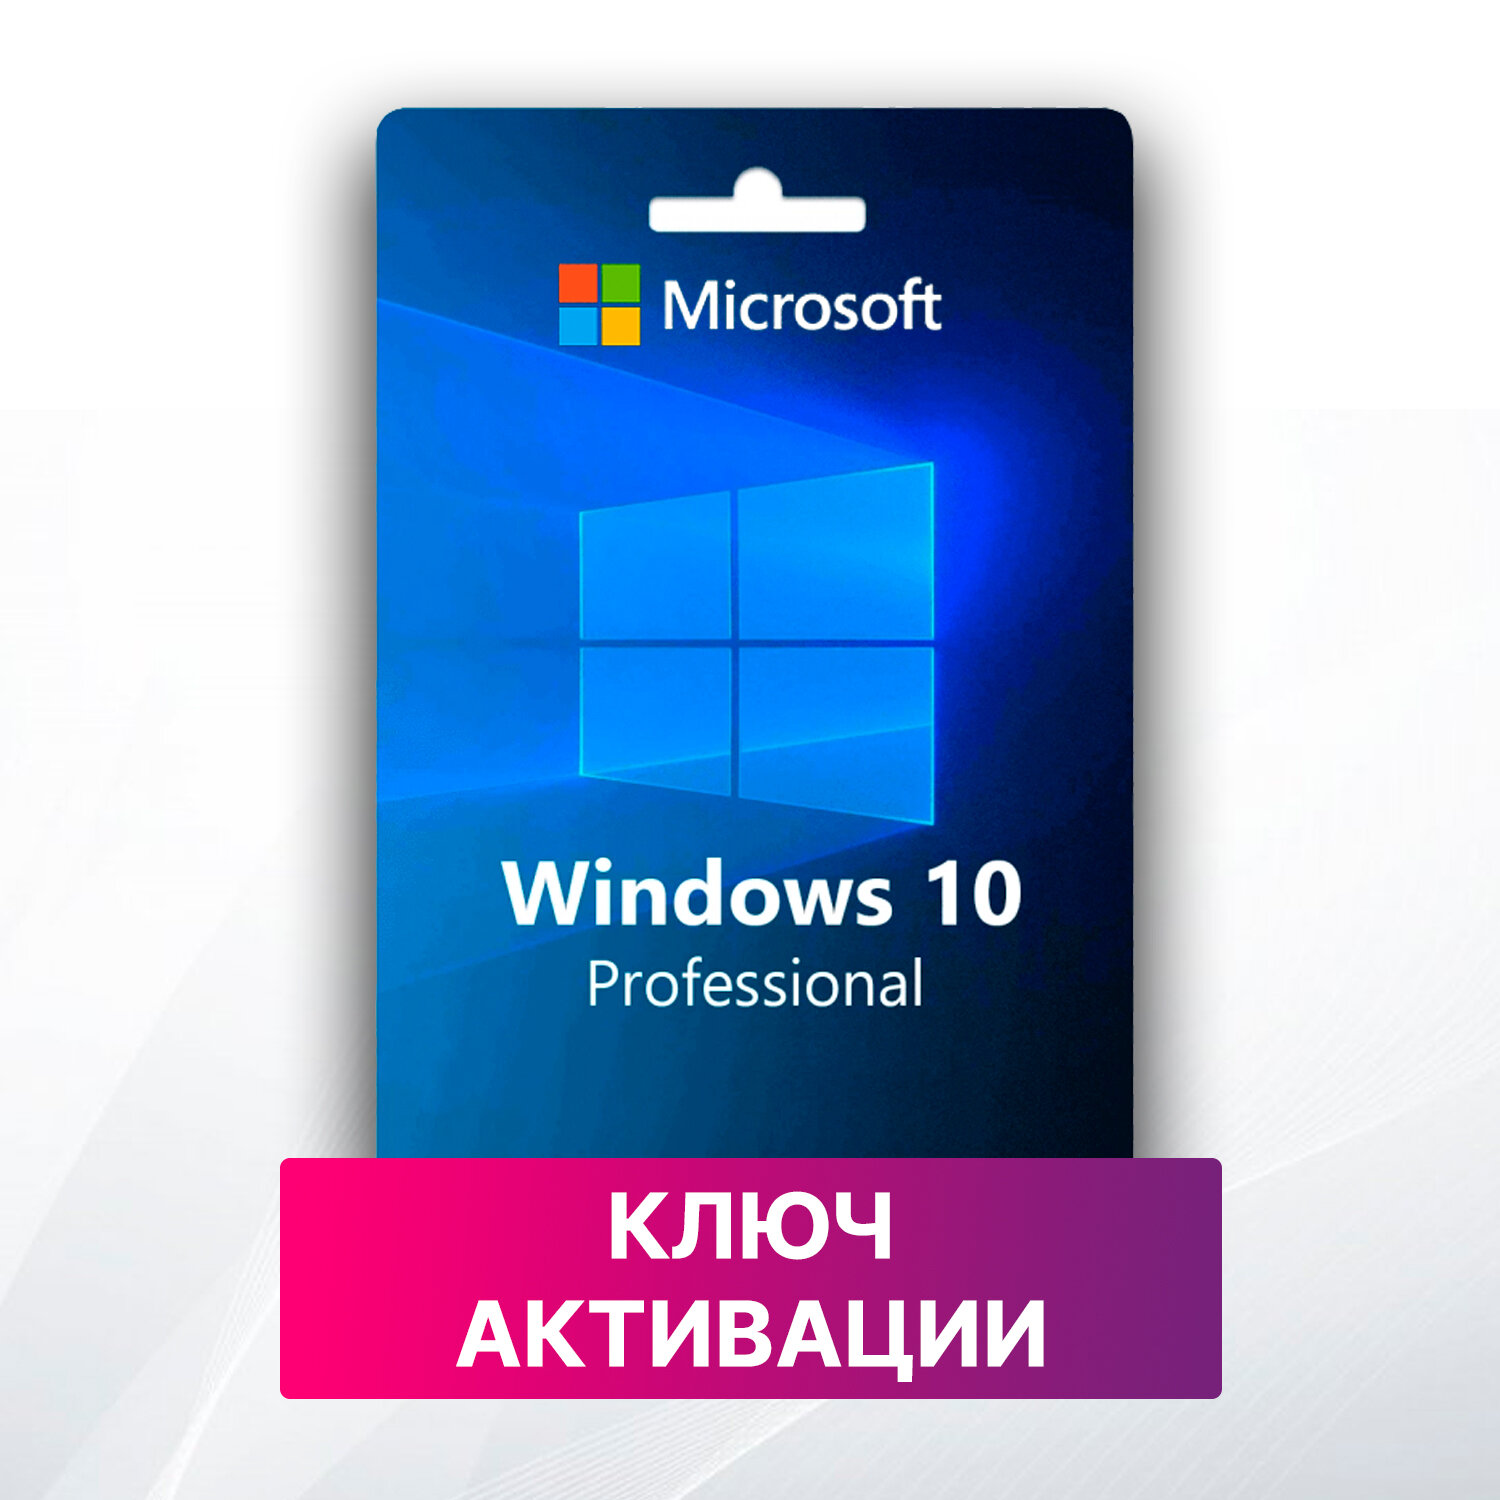 Microsoft Windows 10 Pro (бессрочный ключ) x32/64, русский язык (на 1 ПК)